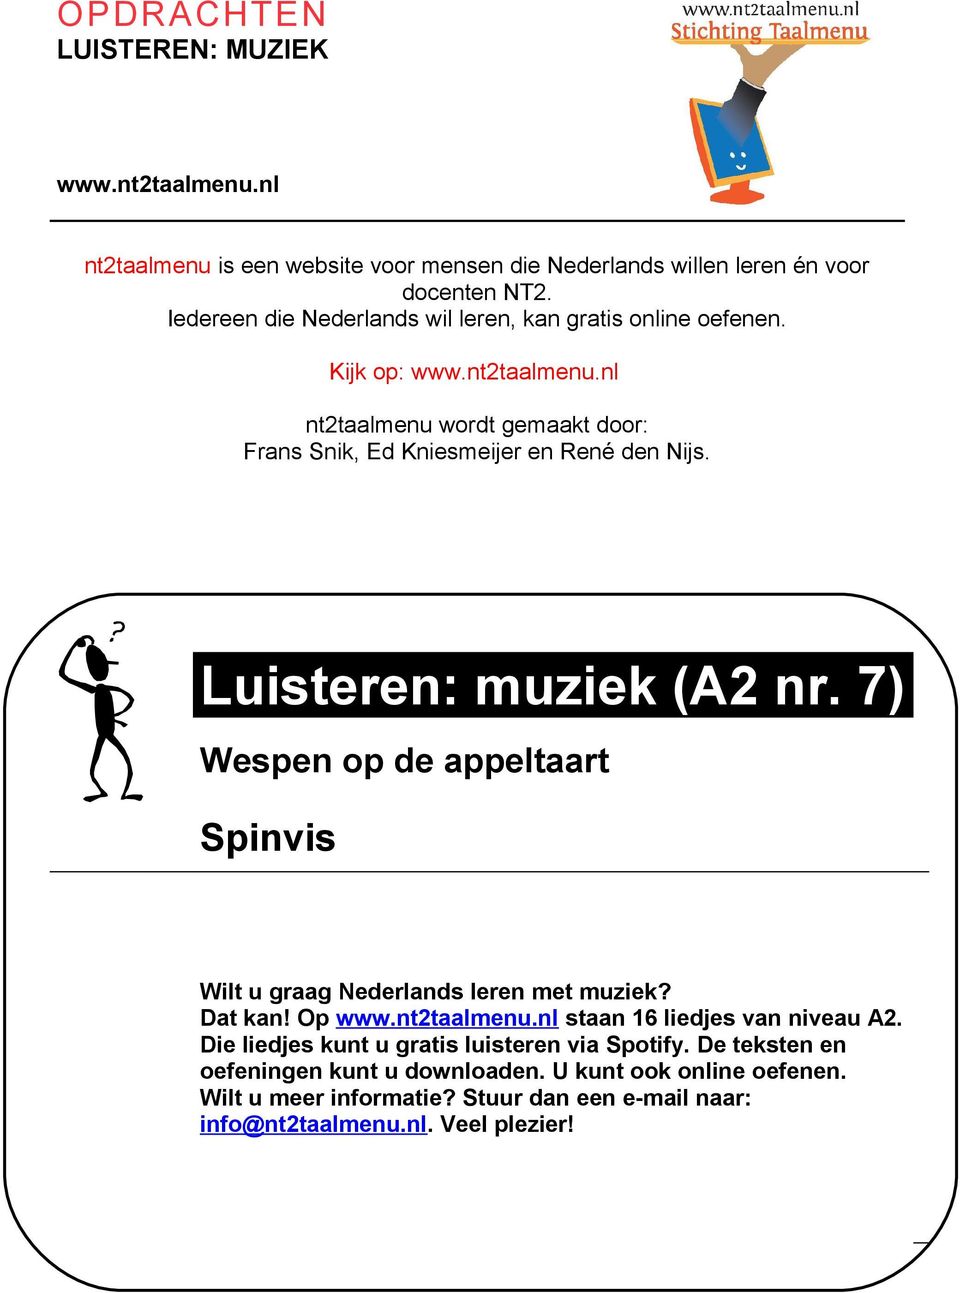 Wat leer je Luisteren: muziek (A2 nr. 7) Wespen op de appeltaart Spinvis Wilt u graag Nederlands leren met muziek? Dat kan! Op www.nt2taalmenu.